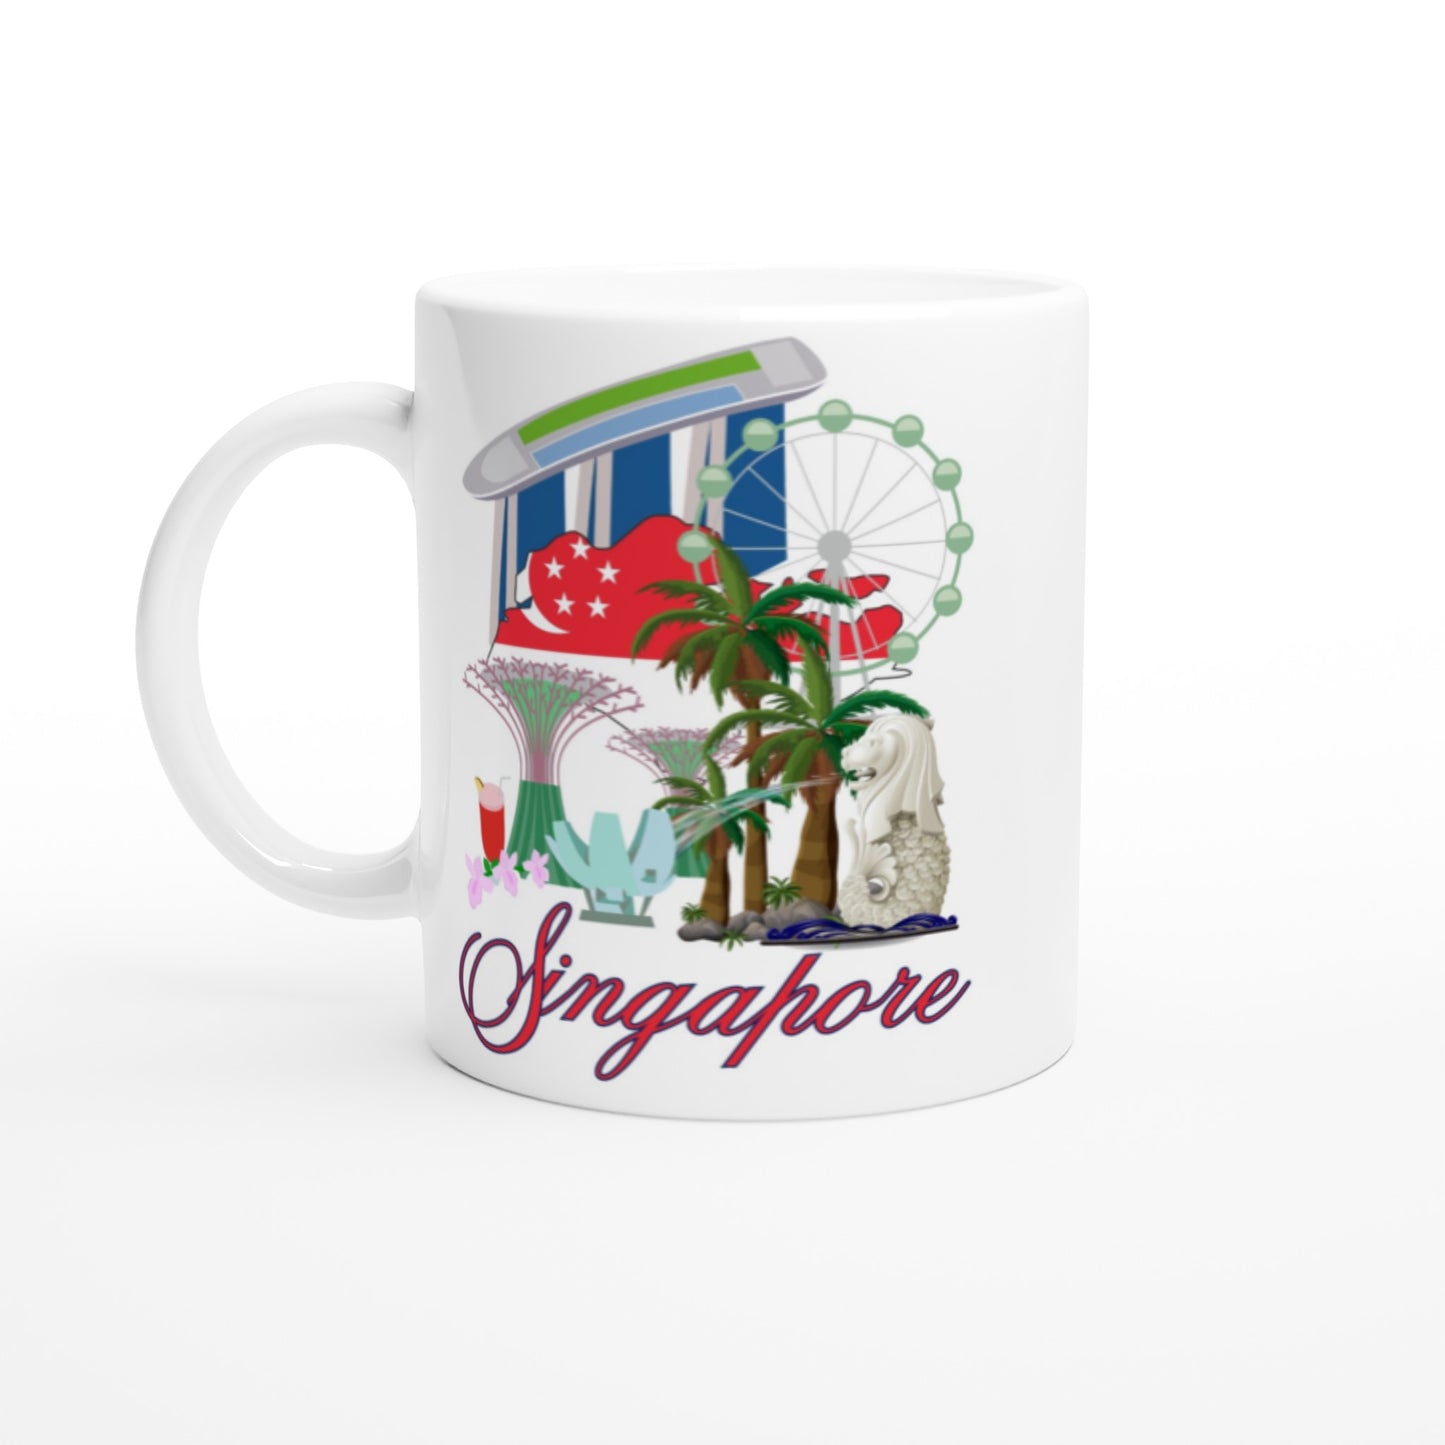 Singapore White 11oz Ceramic Mug